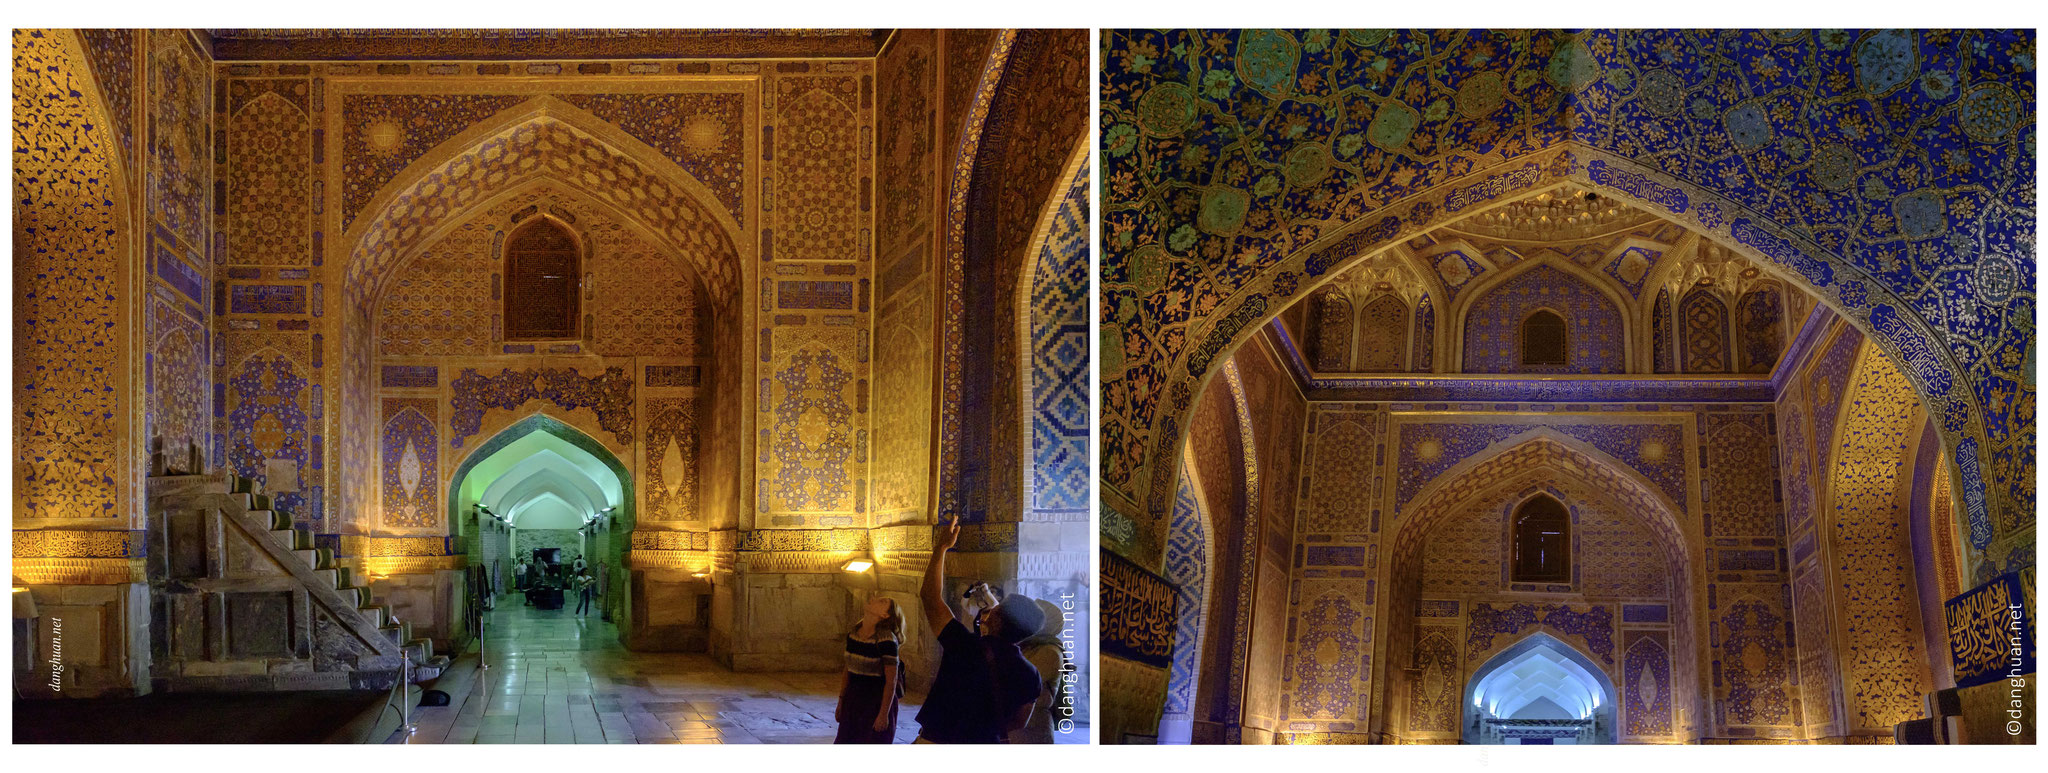 L'intérieur de la médersa Tilla Kori resplendit de motifs de kundal en feuilles d'or, d'inscriptions coraniques, de stalactites descendant sur le mihrab en marbre, de panneaux muraux imitant des tapis et voûte aux délicats entrelacs 